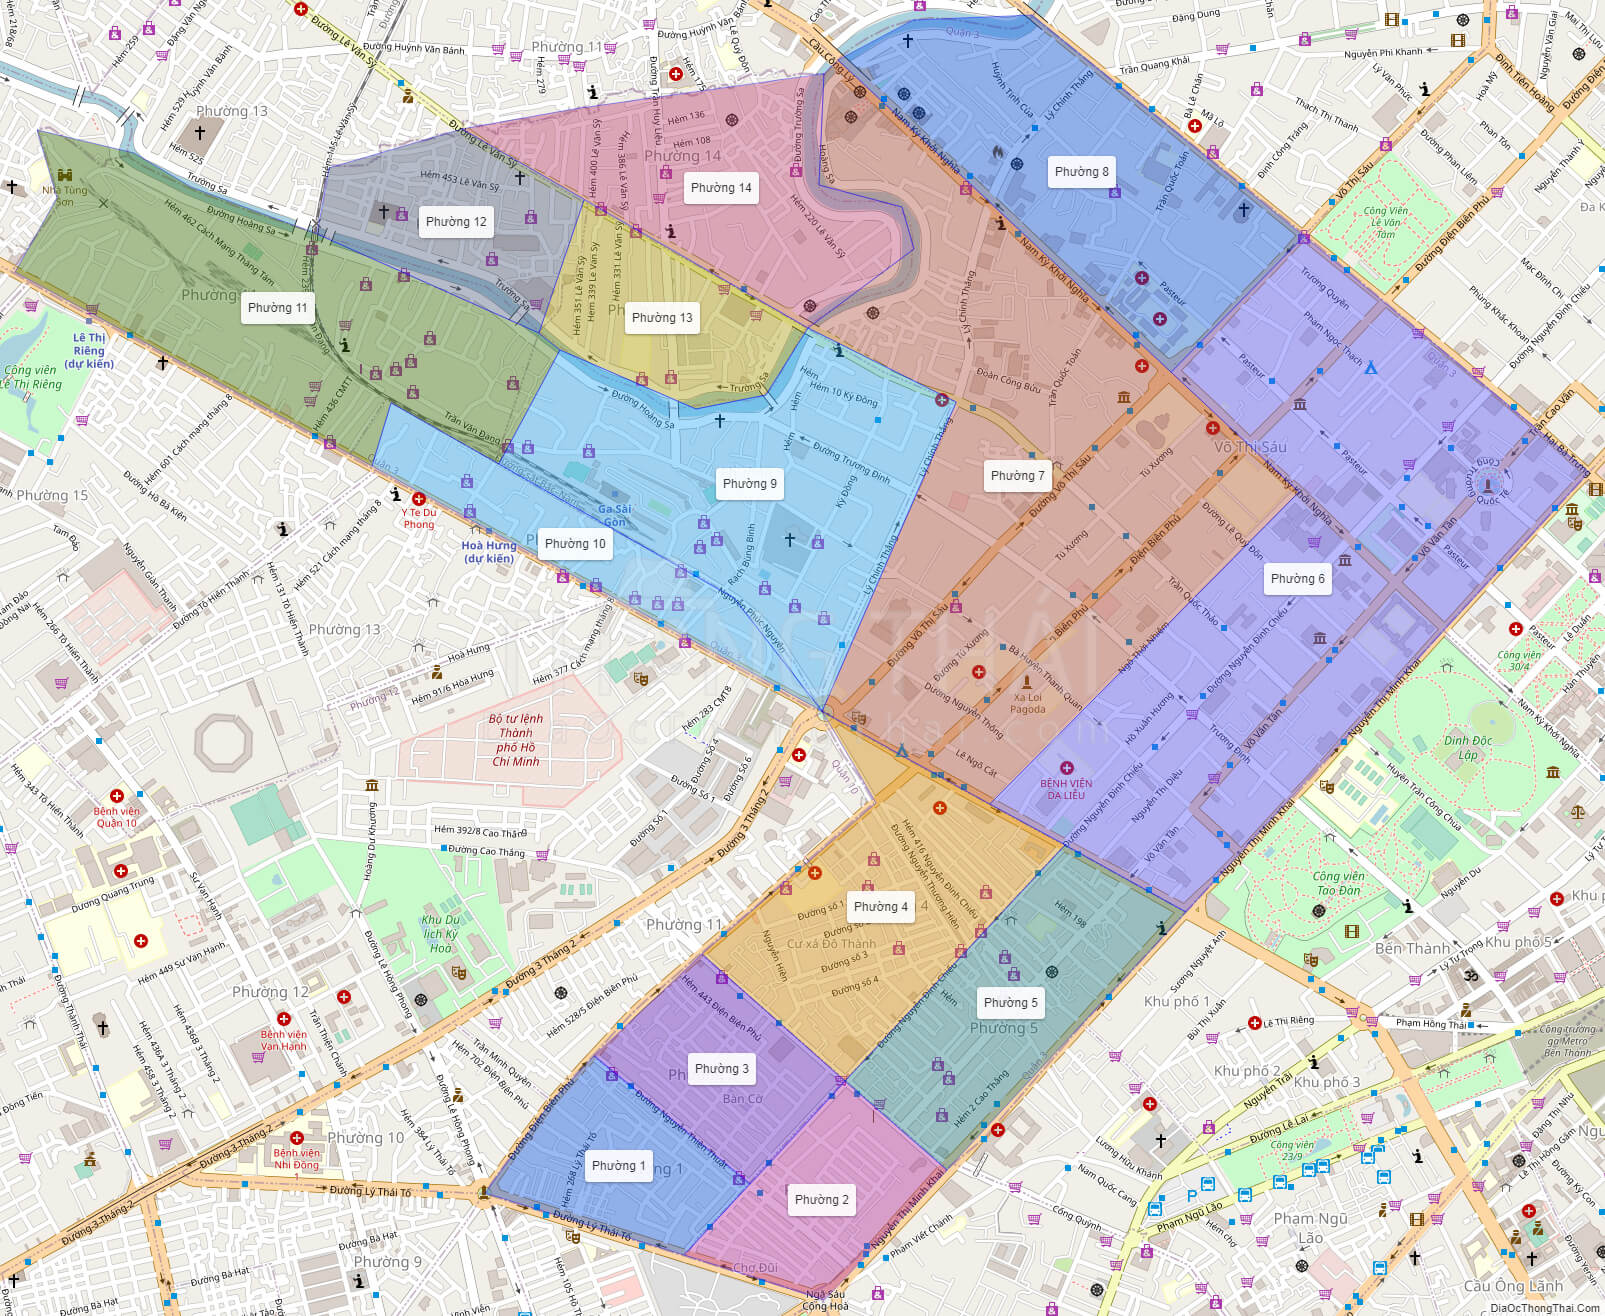 Bản đồ quận 3 đã được cập nhật mới nhất để đáp ứng nhu cầu của cộng đồng trong việc tìm kiếm thông tin về khu vực này. Với các cập nhật đầy đủ và chính xác, bạn có thể tìm kiếm và khám phá quận 3 một cách dễ dàng hơn bao giờ hết. Hãy cập nhật bản đồ quận 3 để không bỏ lỡ bất kỳ thay đổi nào của khu vực này.